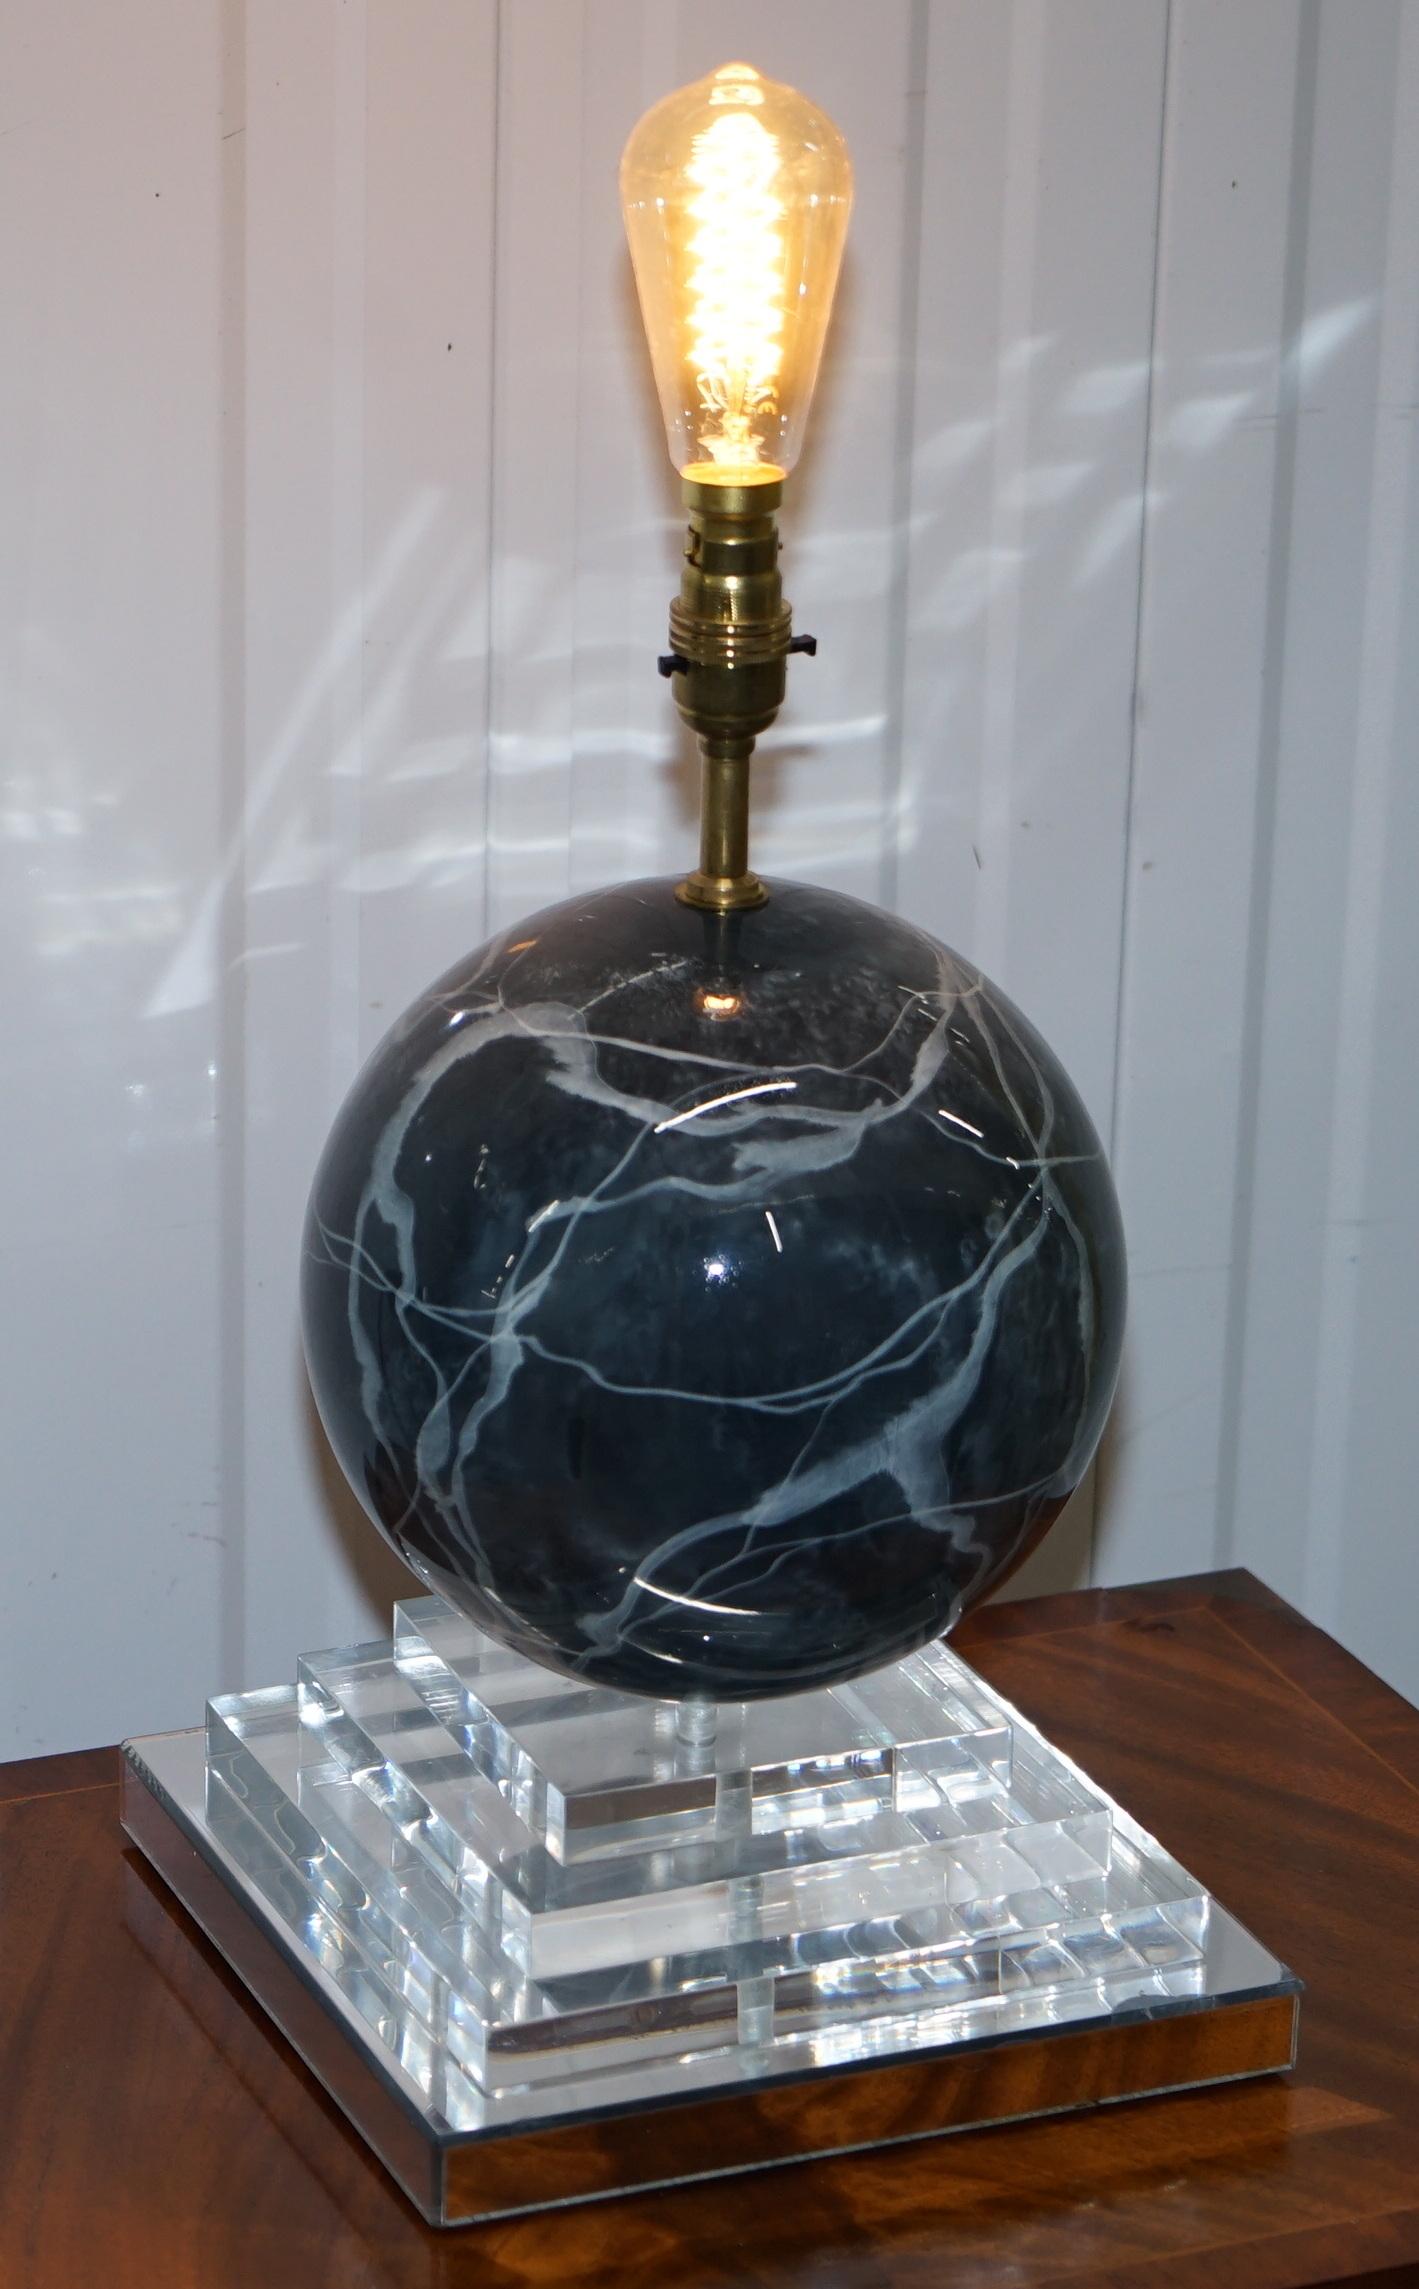 Wir freuen uns, diese schöne runde Marmorlampe aus den 1960er Jahren auf einem vierstufigen Plexiglassockel mit verspiegelter Oberfläche zum Verkauf anzubieten

Eine sehr gut aussehende seltene und dekorative Tischlampe, ich habe noch nie eine